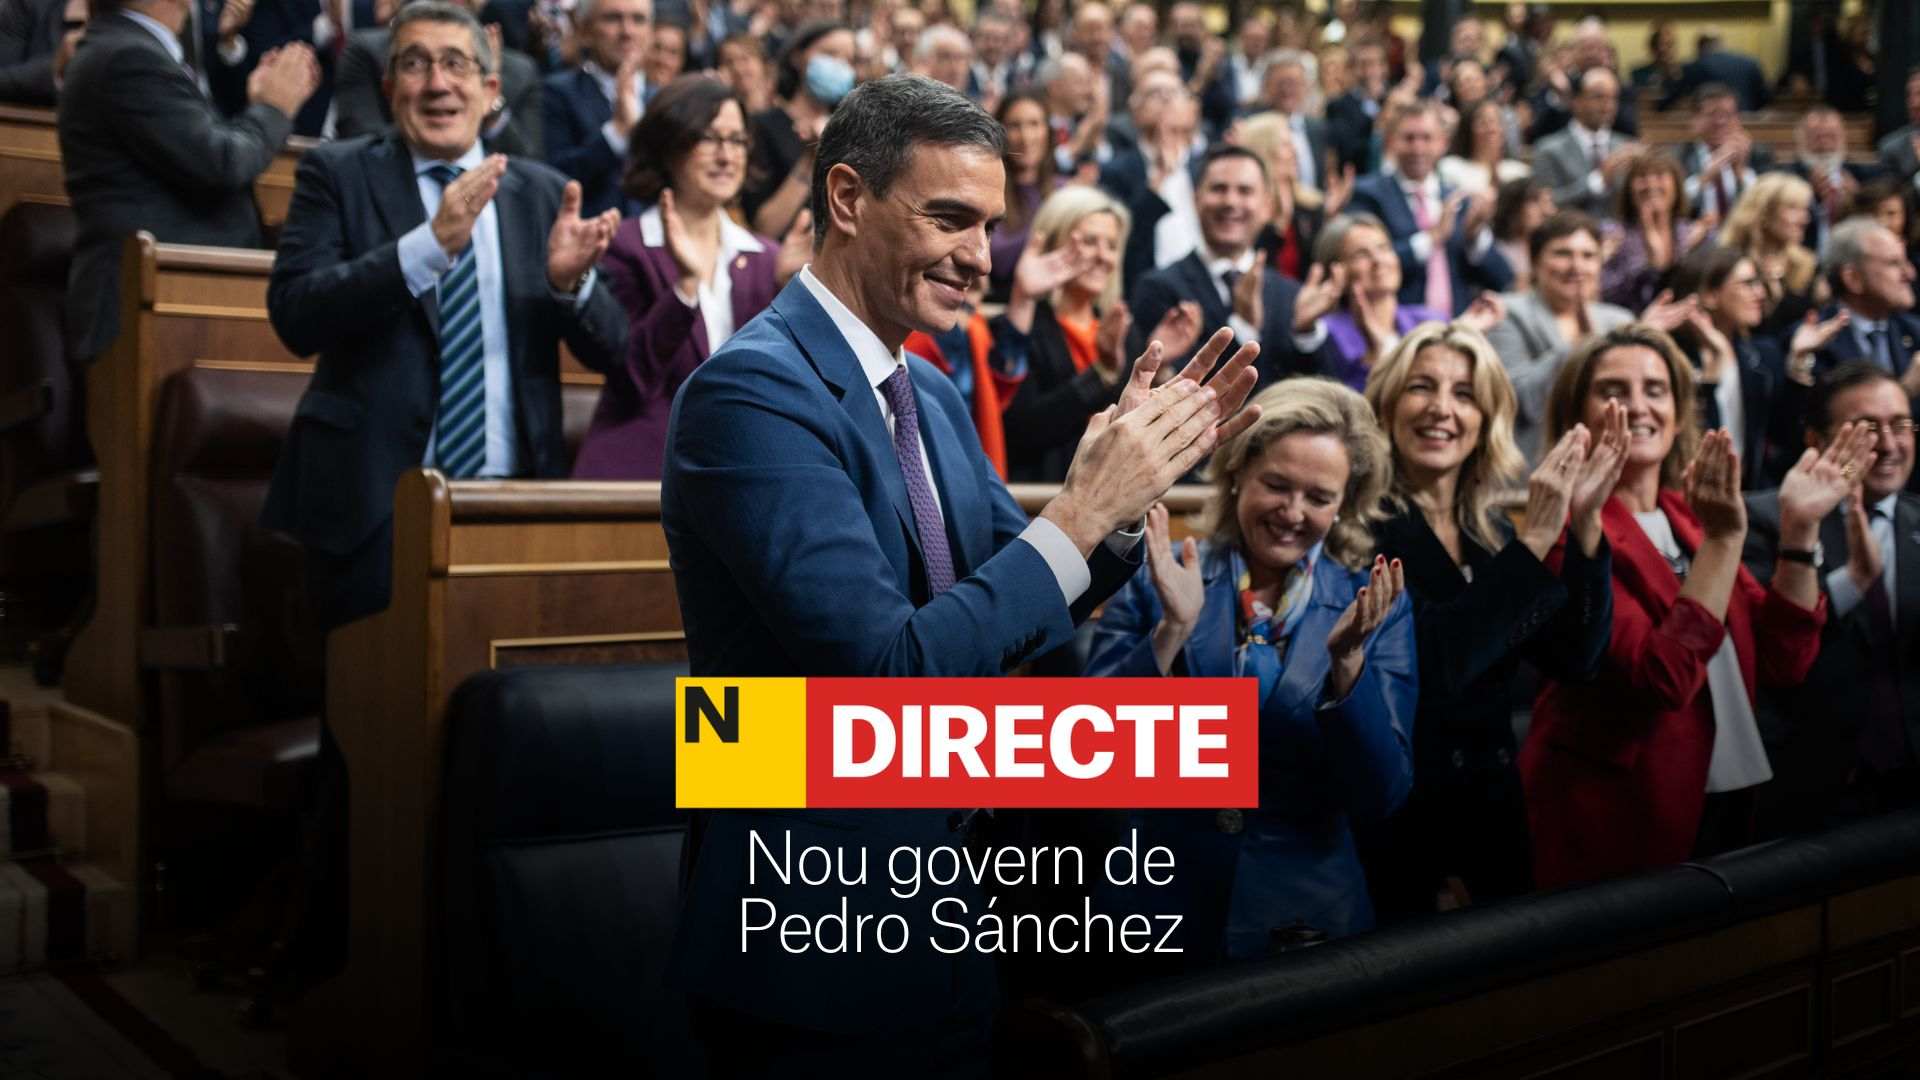 Nou govern de Pedro Sánchez, DIRECTE | Presentació dels nous ministres, última hora